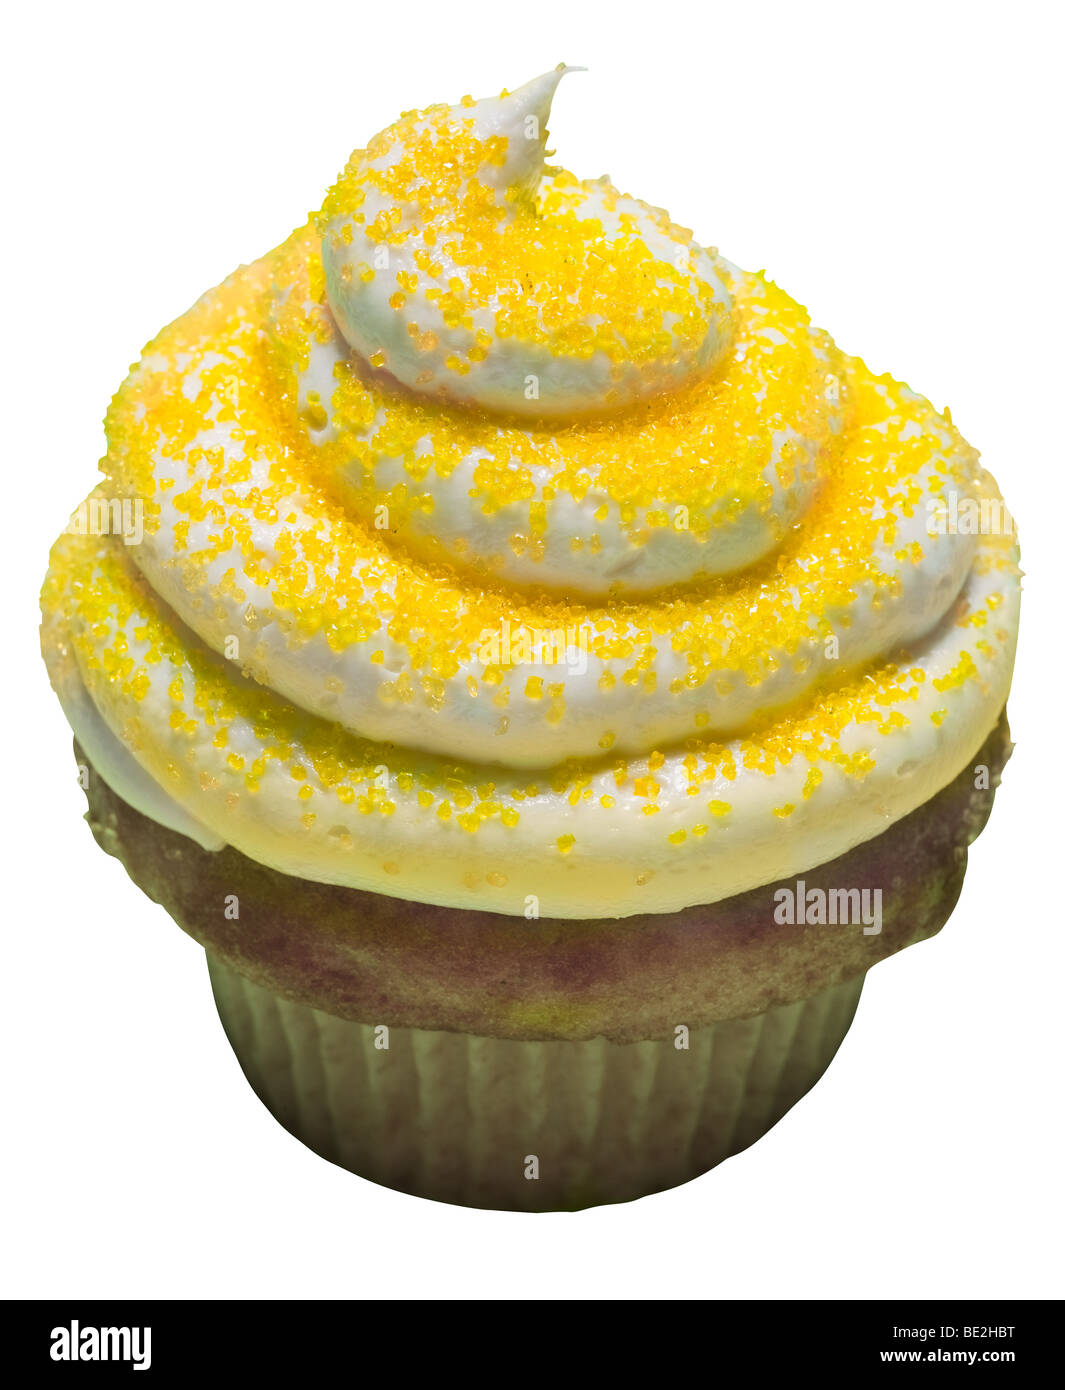 Lemon Cupcake with Sprinkles Stock Photo